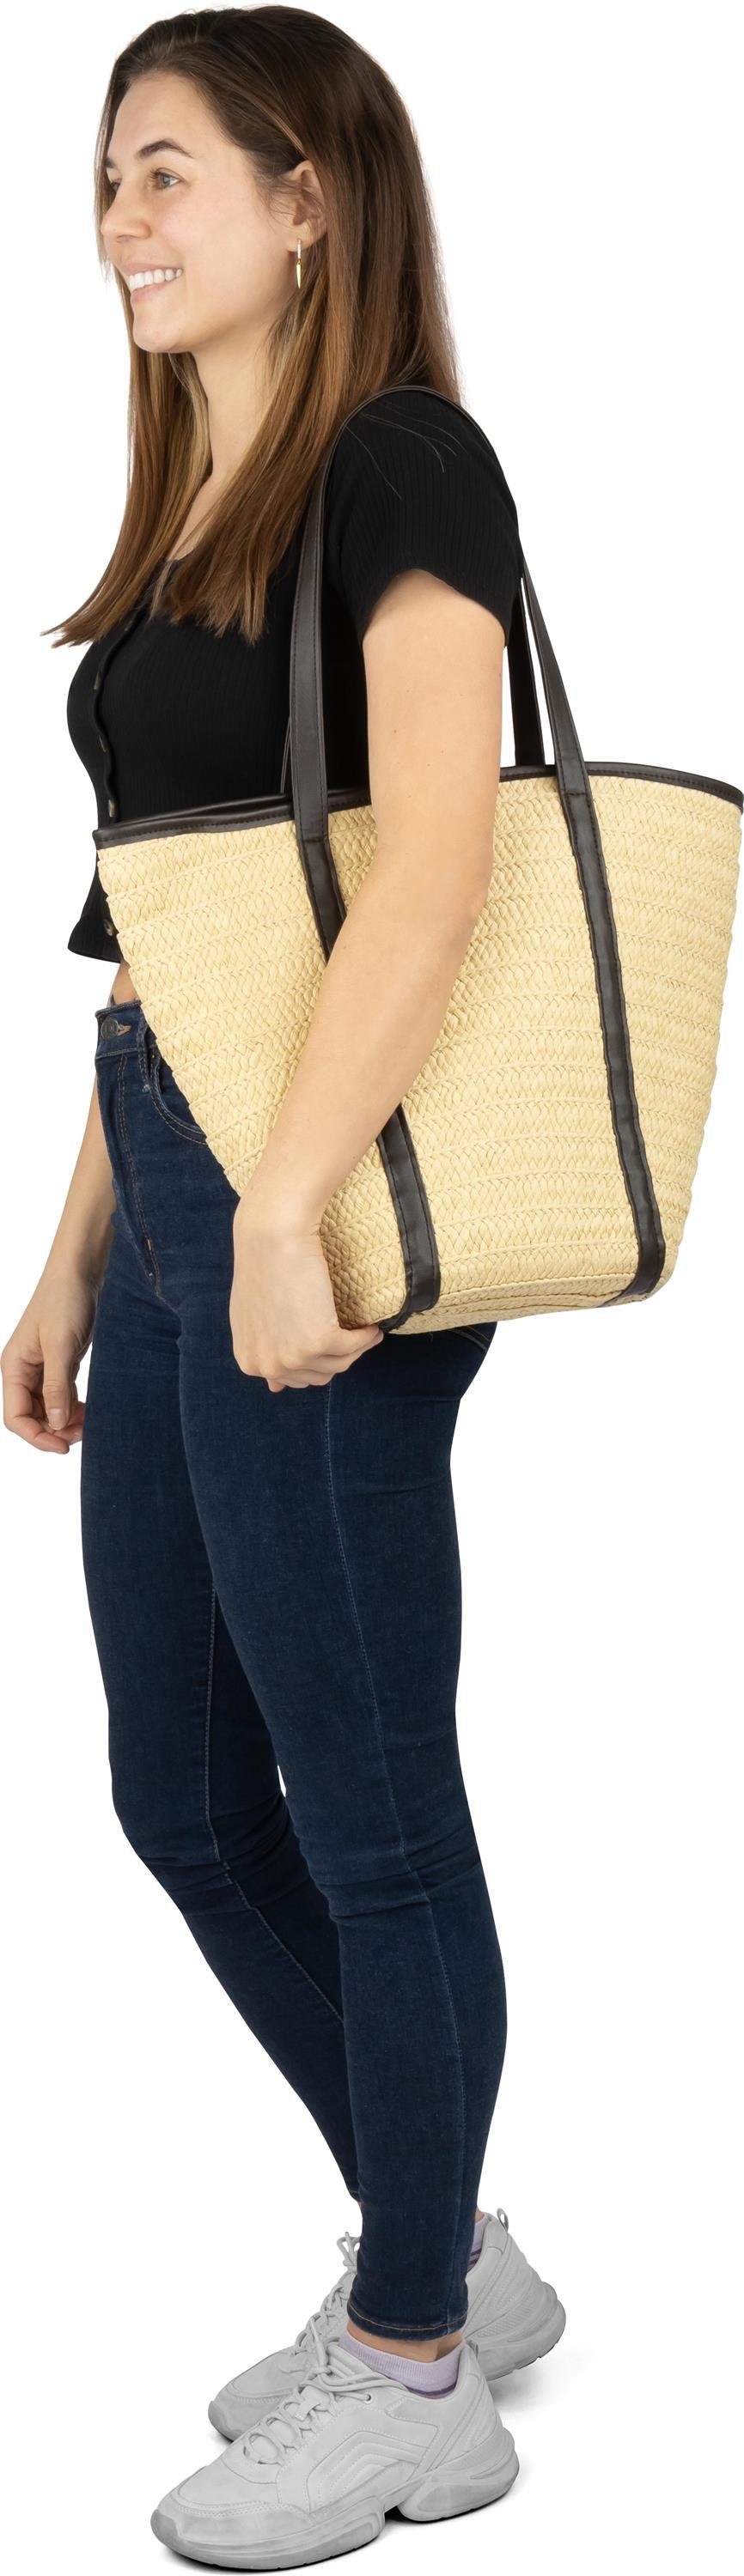 Stroh Liter Sommertasche Janice Makati, 12 Damen Strandtasche Strandtasche aus